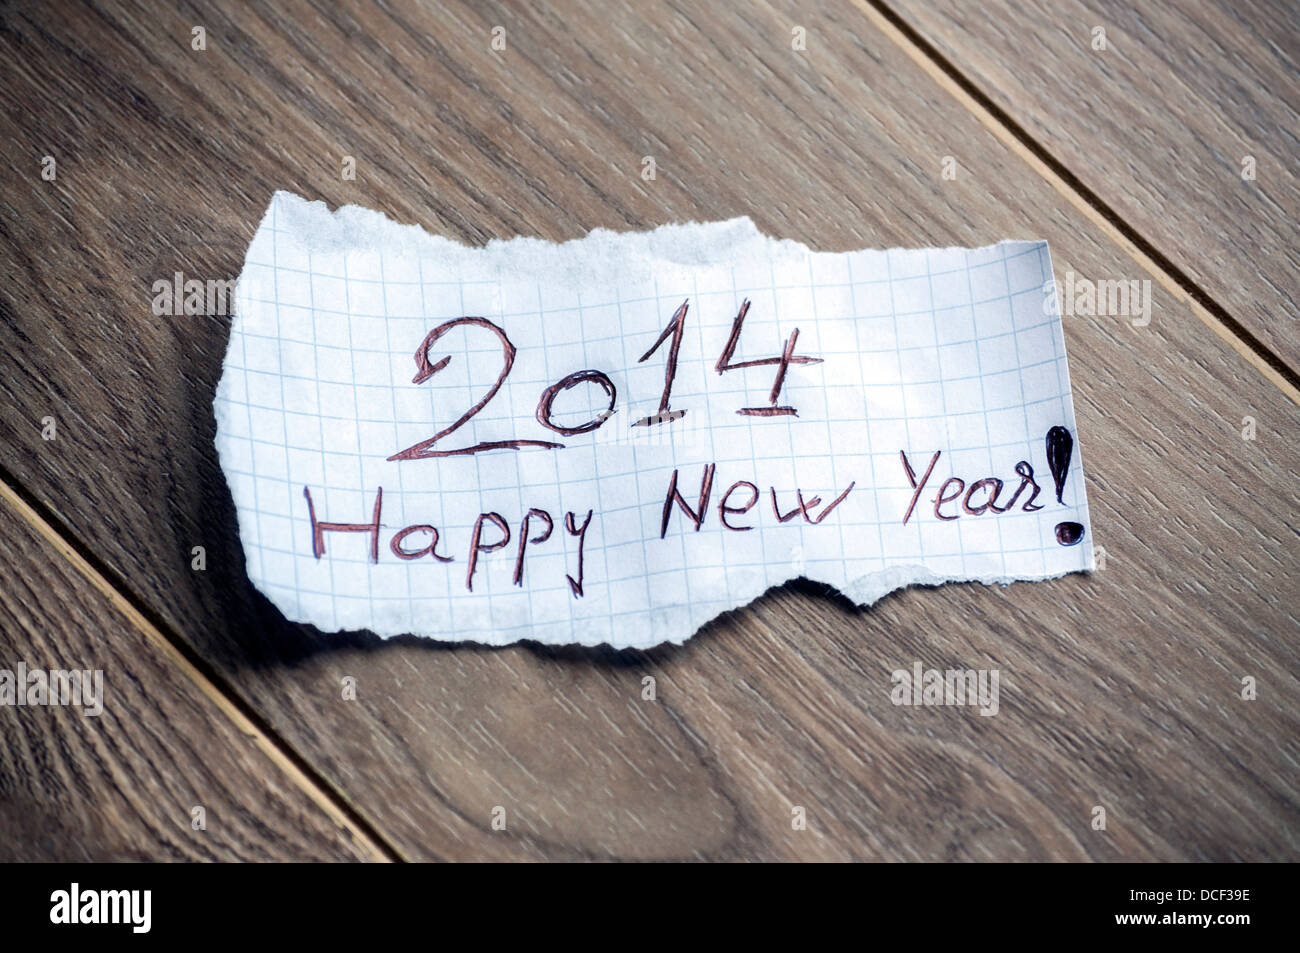 Felice anno nuovo 2014 - La scrittura a mano il testo su un pezzo di carta su uno sfondo di legno Foto Stock